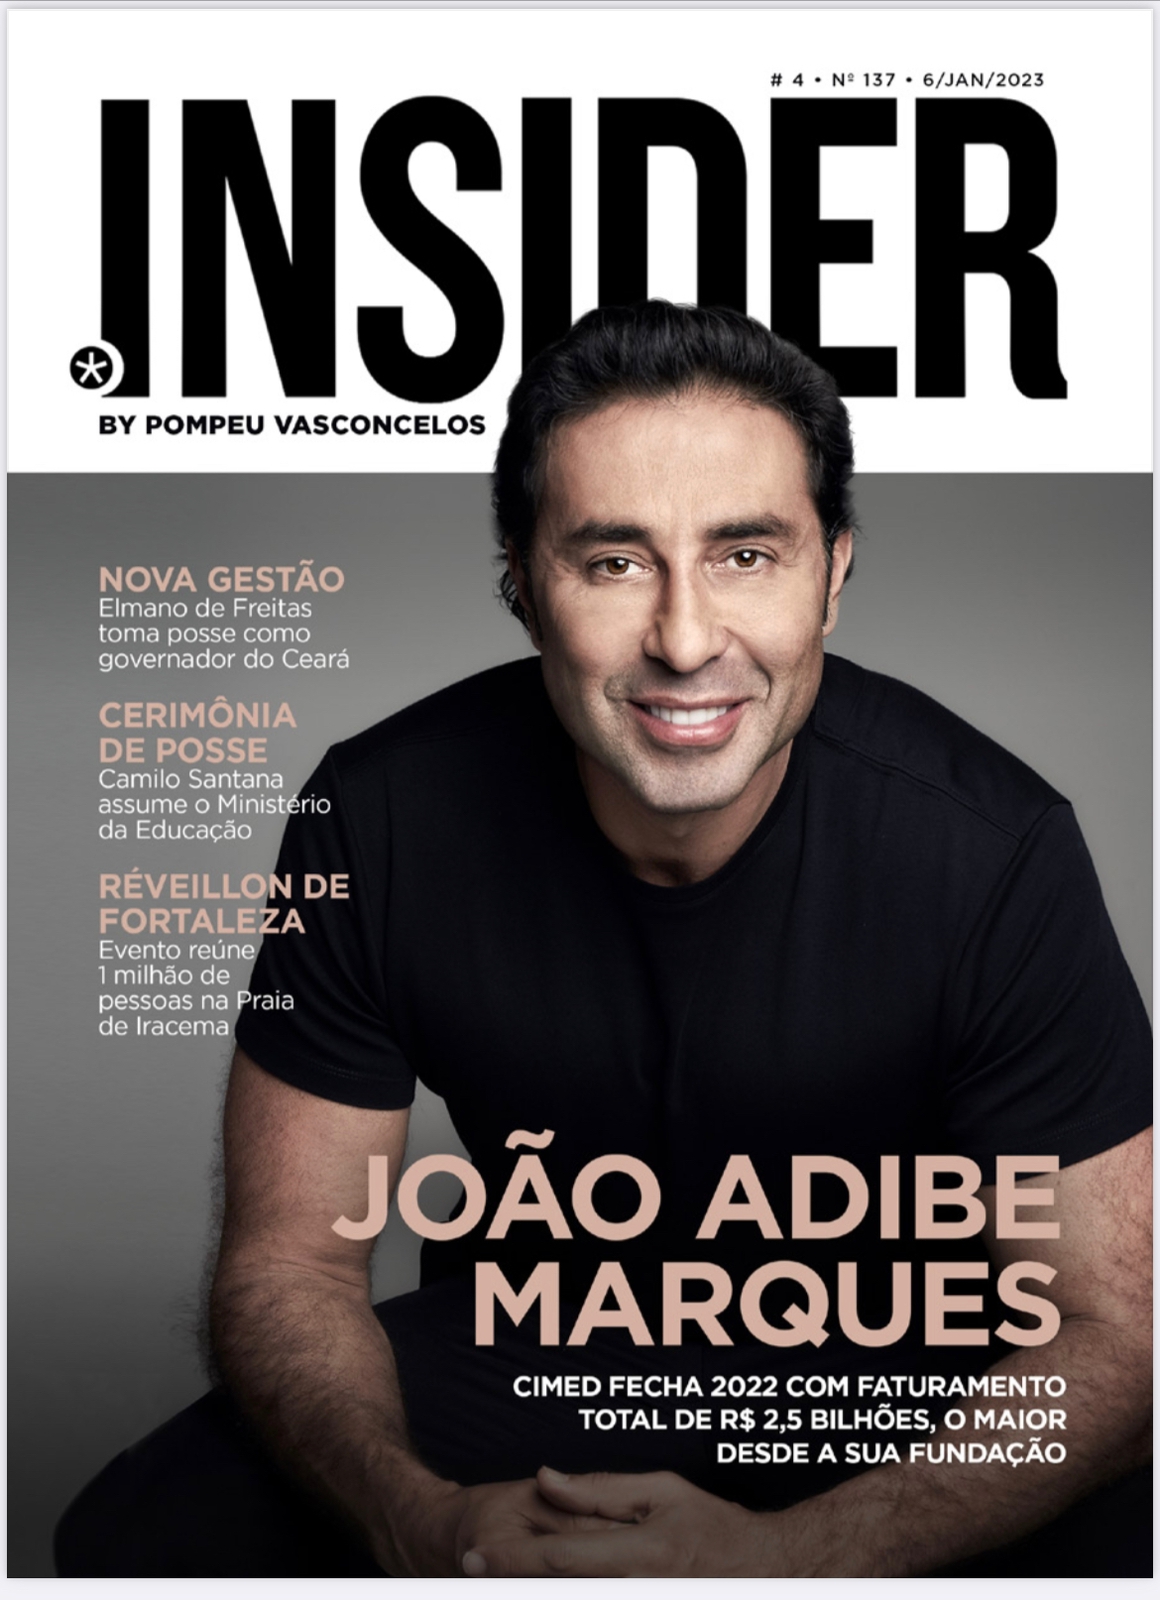 CEO do Grupo Cimed, João Adib, estampa a capa da nova edição da revista Insider